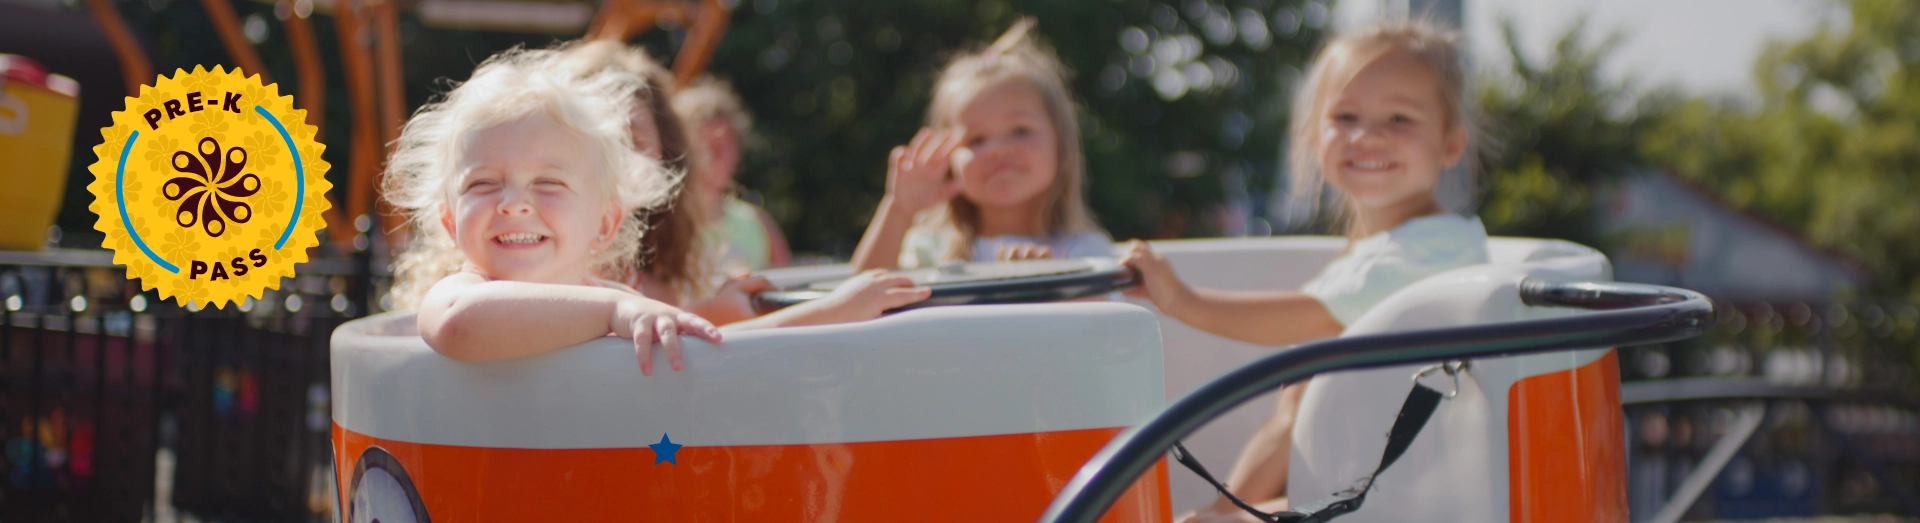 Children riding kiddie ride at Hersheypark